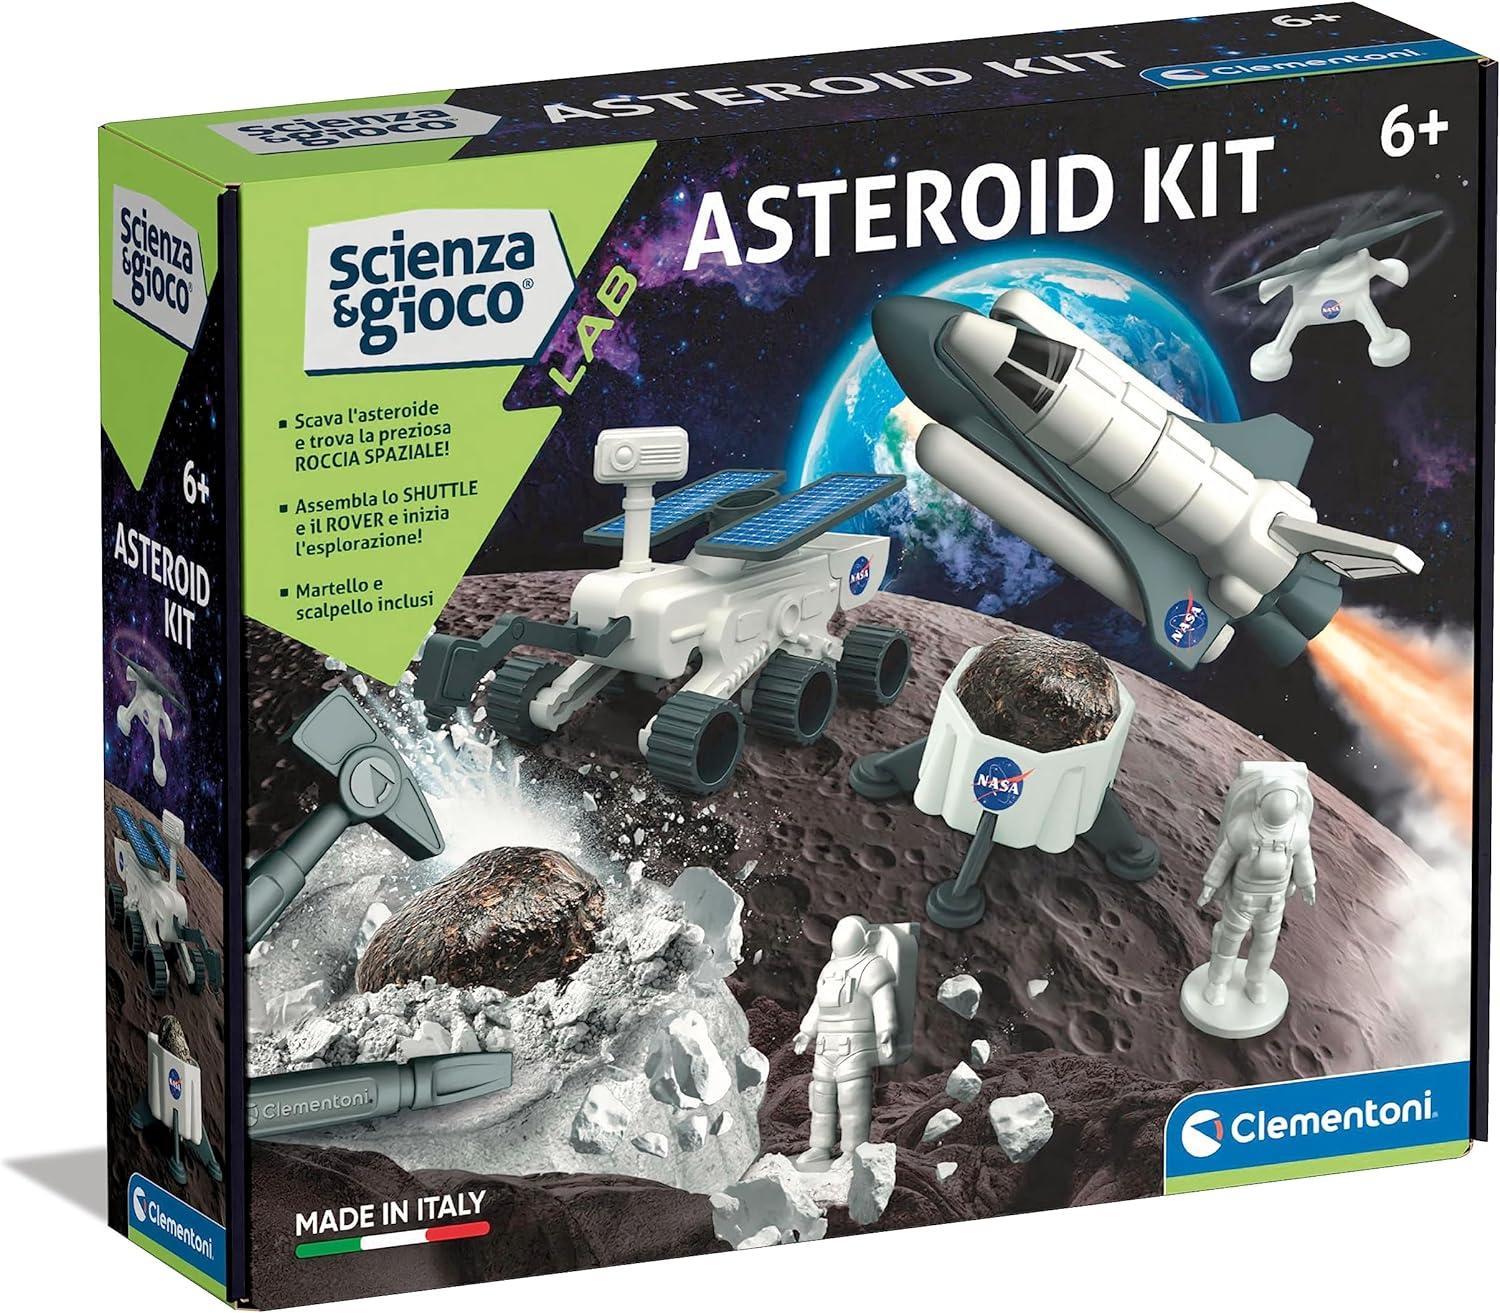 clementoni asteroid kit scienza e gioco